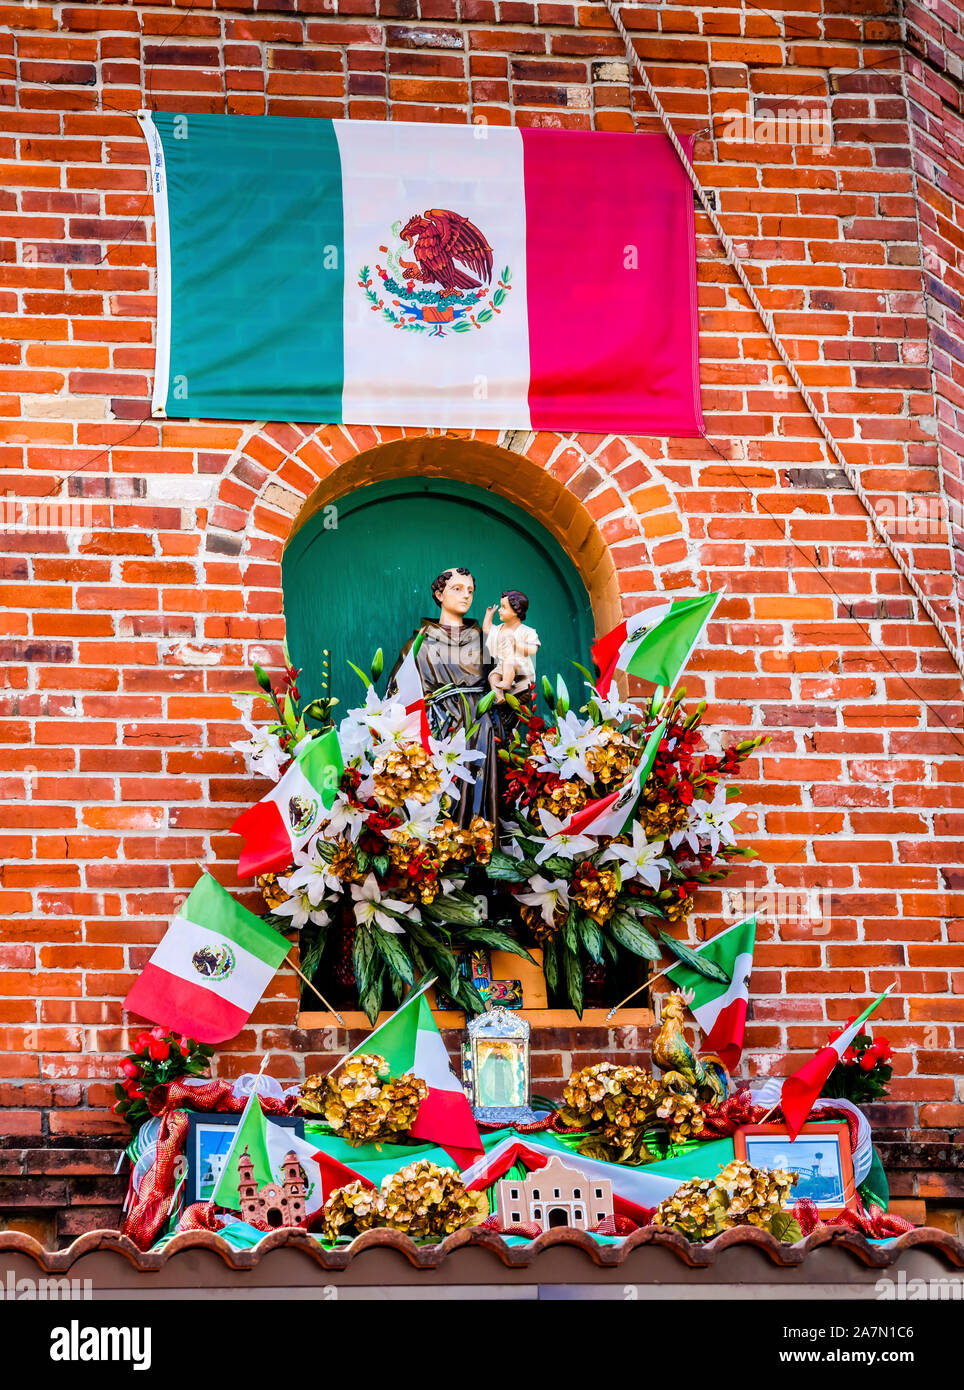 Plaza del Mercado Mexicano símbolos distintivos de Navidad Adornos de papel en San Antonio Texas. San Antonio está muy cerca de México culturalmente con muchos mejicanos volver Foto de stock